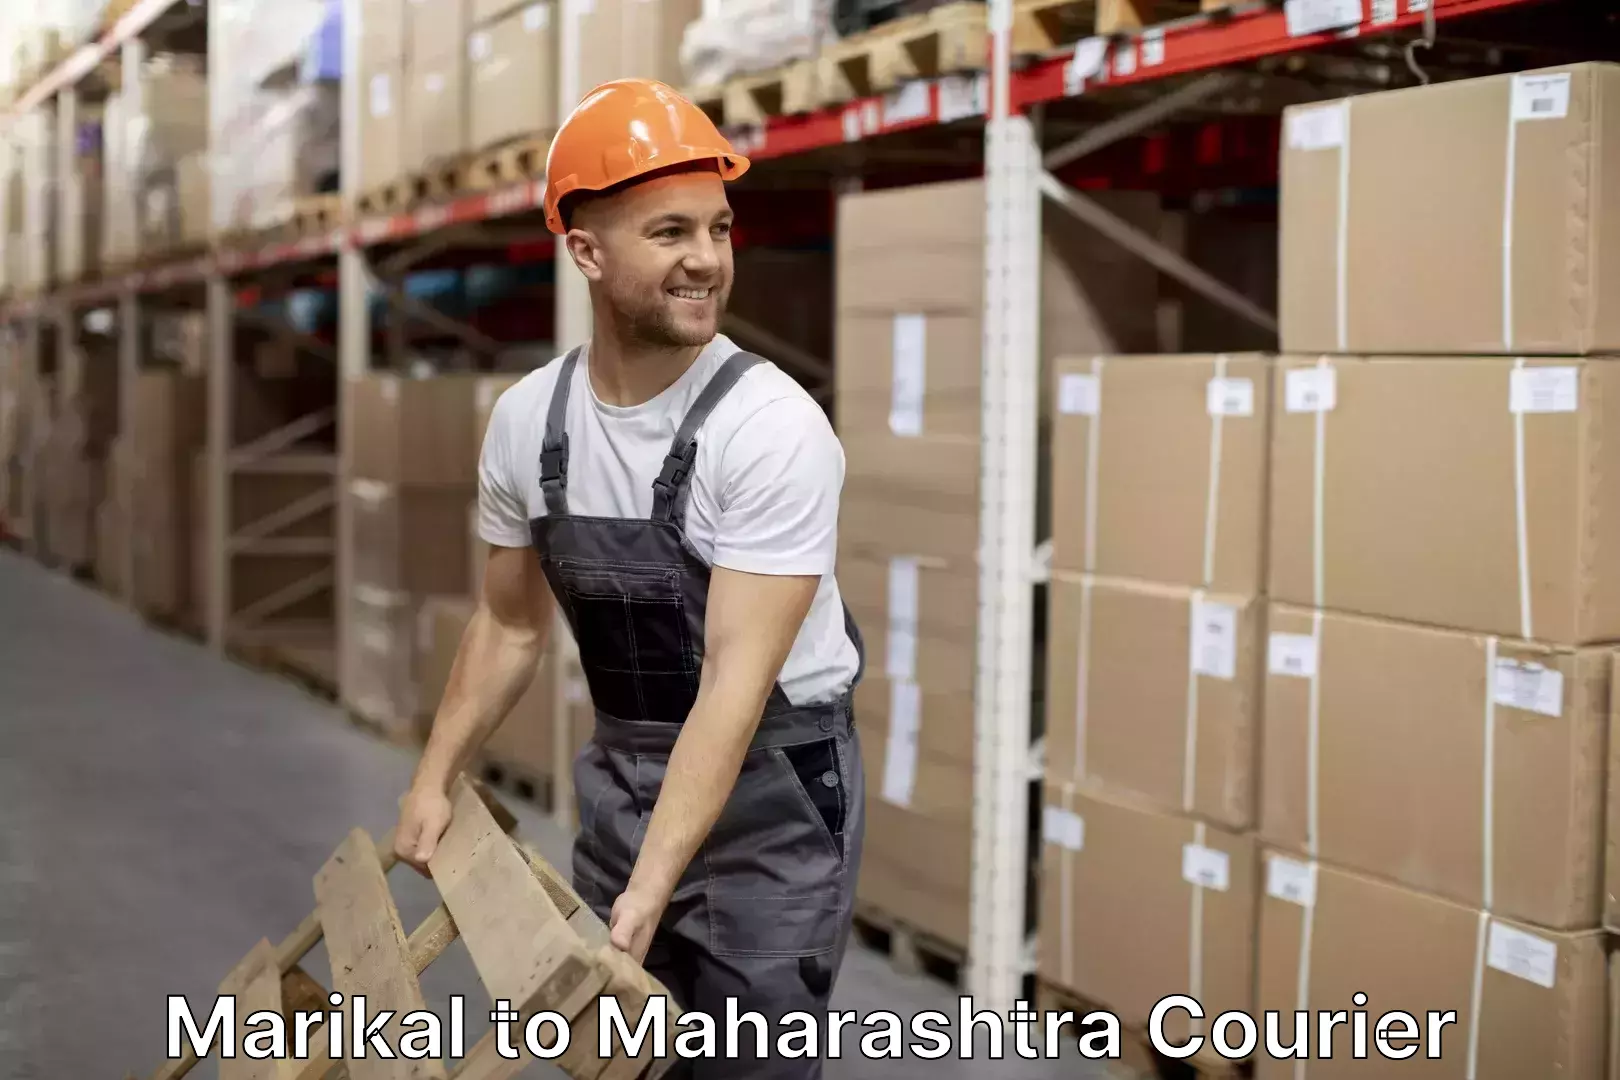 Furniture moving service Marikal to Maharashtra